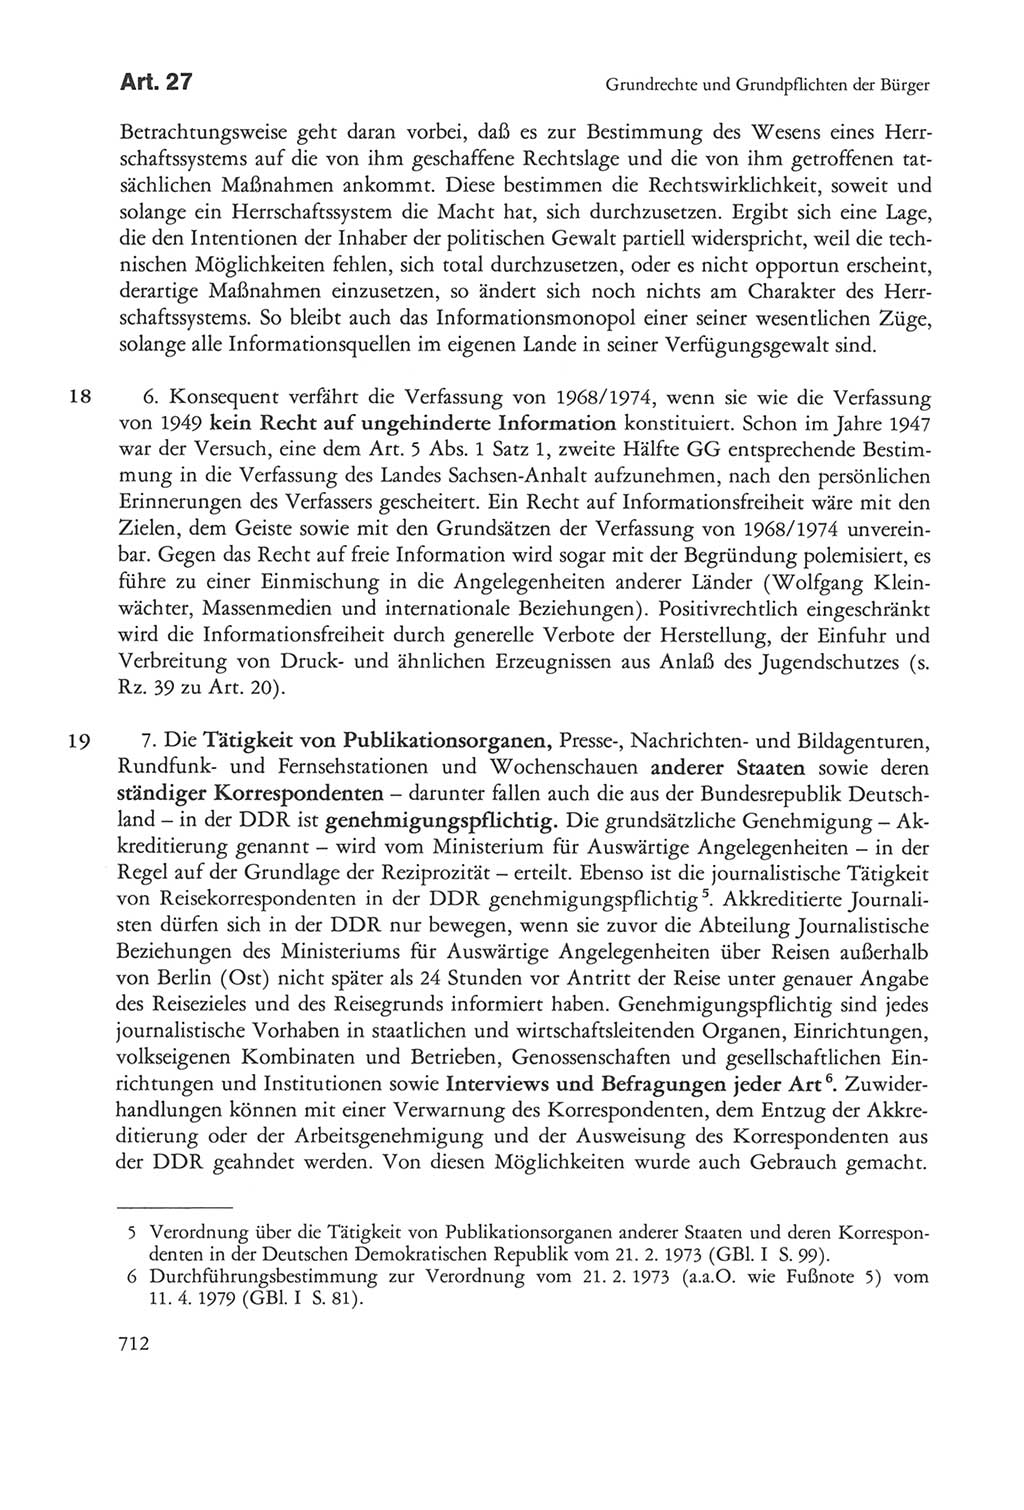 Die sozialistische Verfassung der Deutschen Demokratischen Republik (DDR), Kommentar mit einem Nachtrag 1997, Seite 712 (Soz. Verf. DDR Komm. Nachtr. 1997, S. 712)